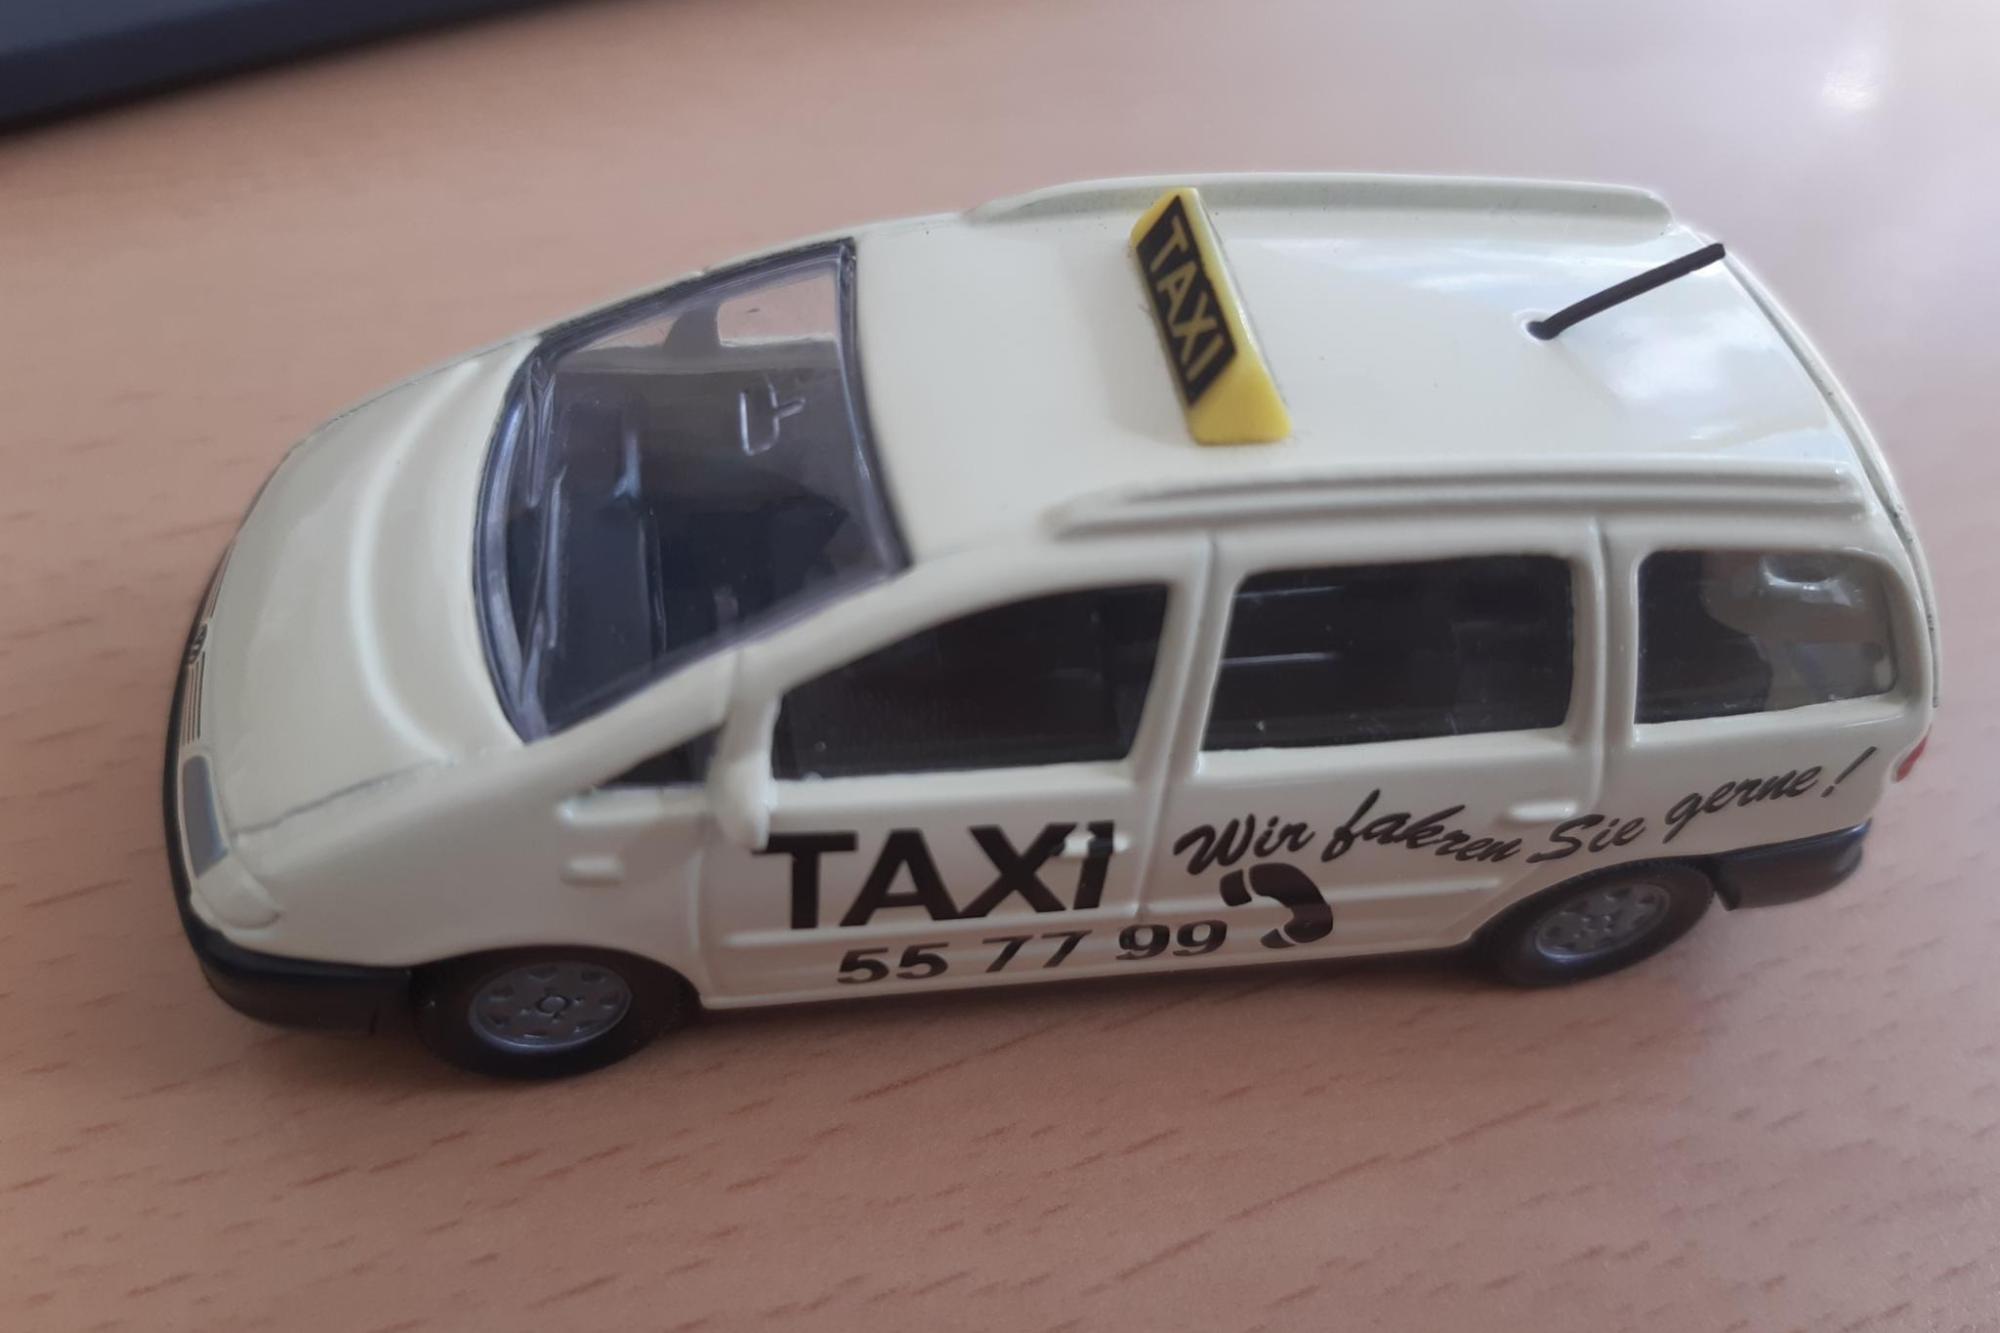 Taxi vergessen